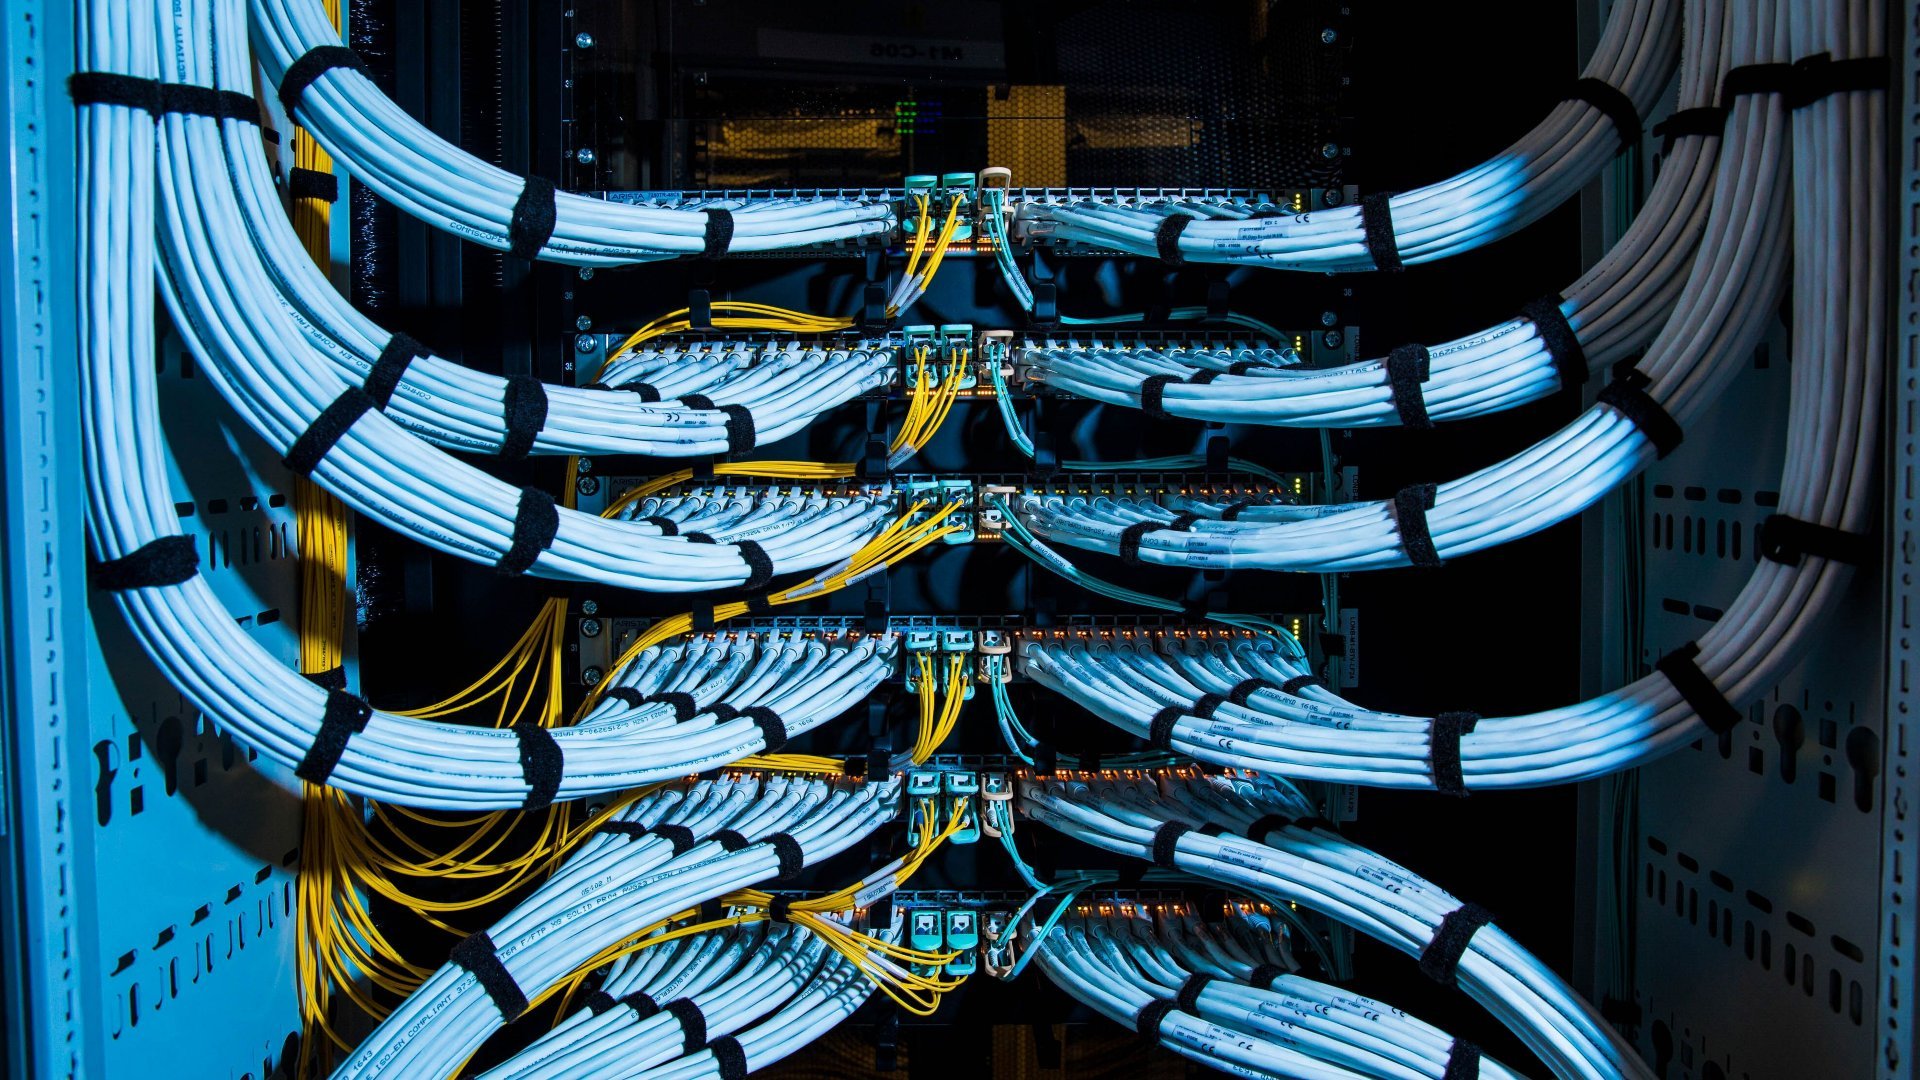 Ilustrasi data center atau pusat data, deretan kabel fiber optic di salah satu perkantoran. - Bloomberg/Jason Alden